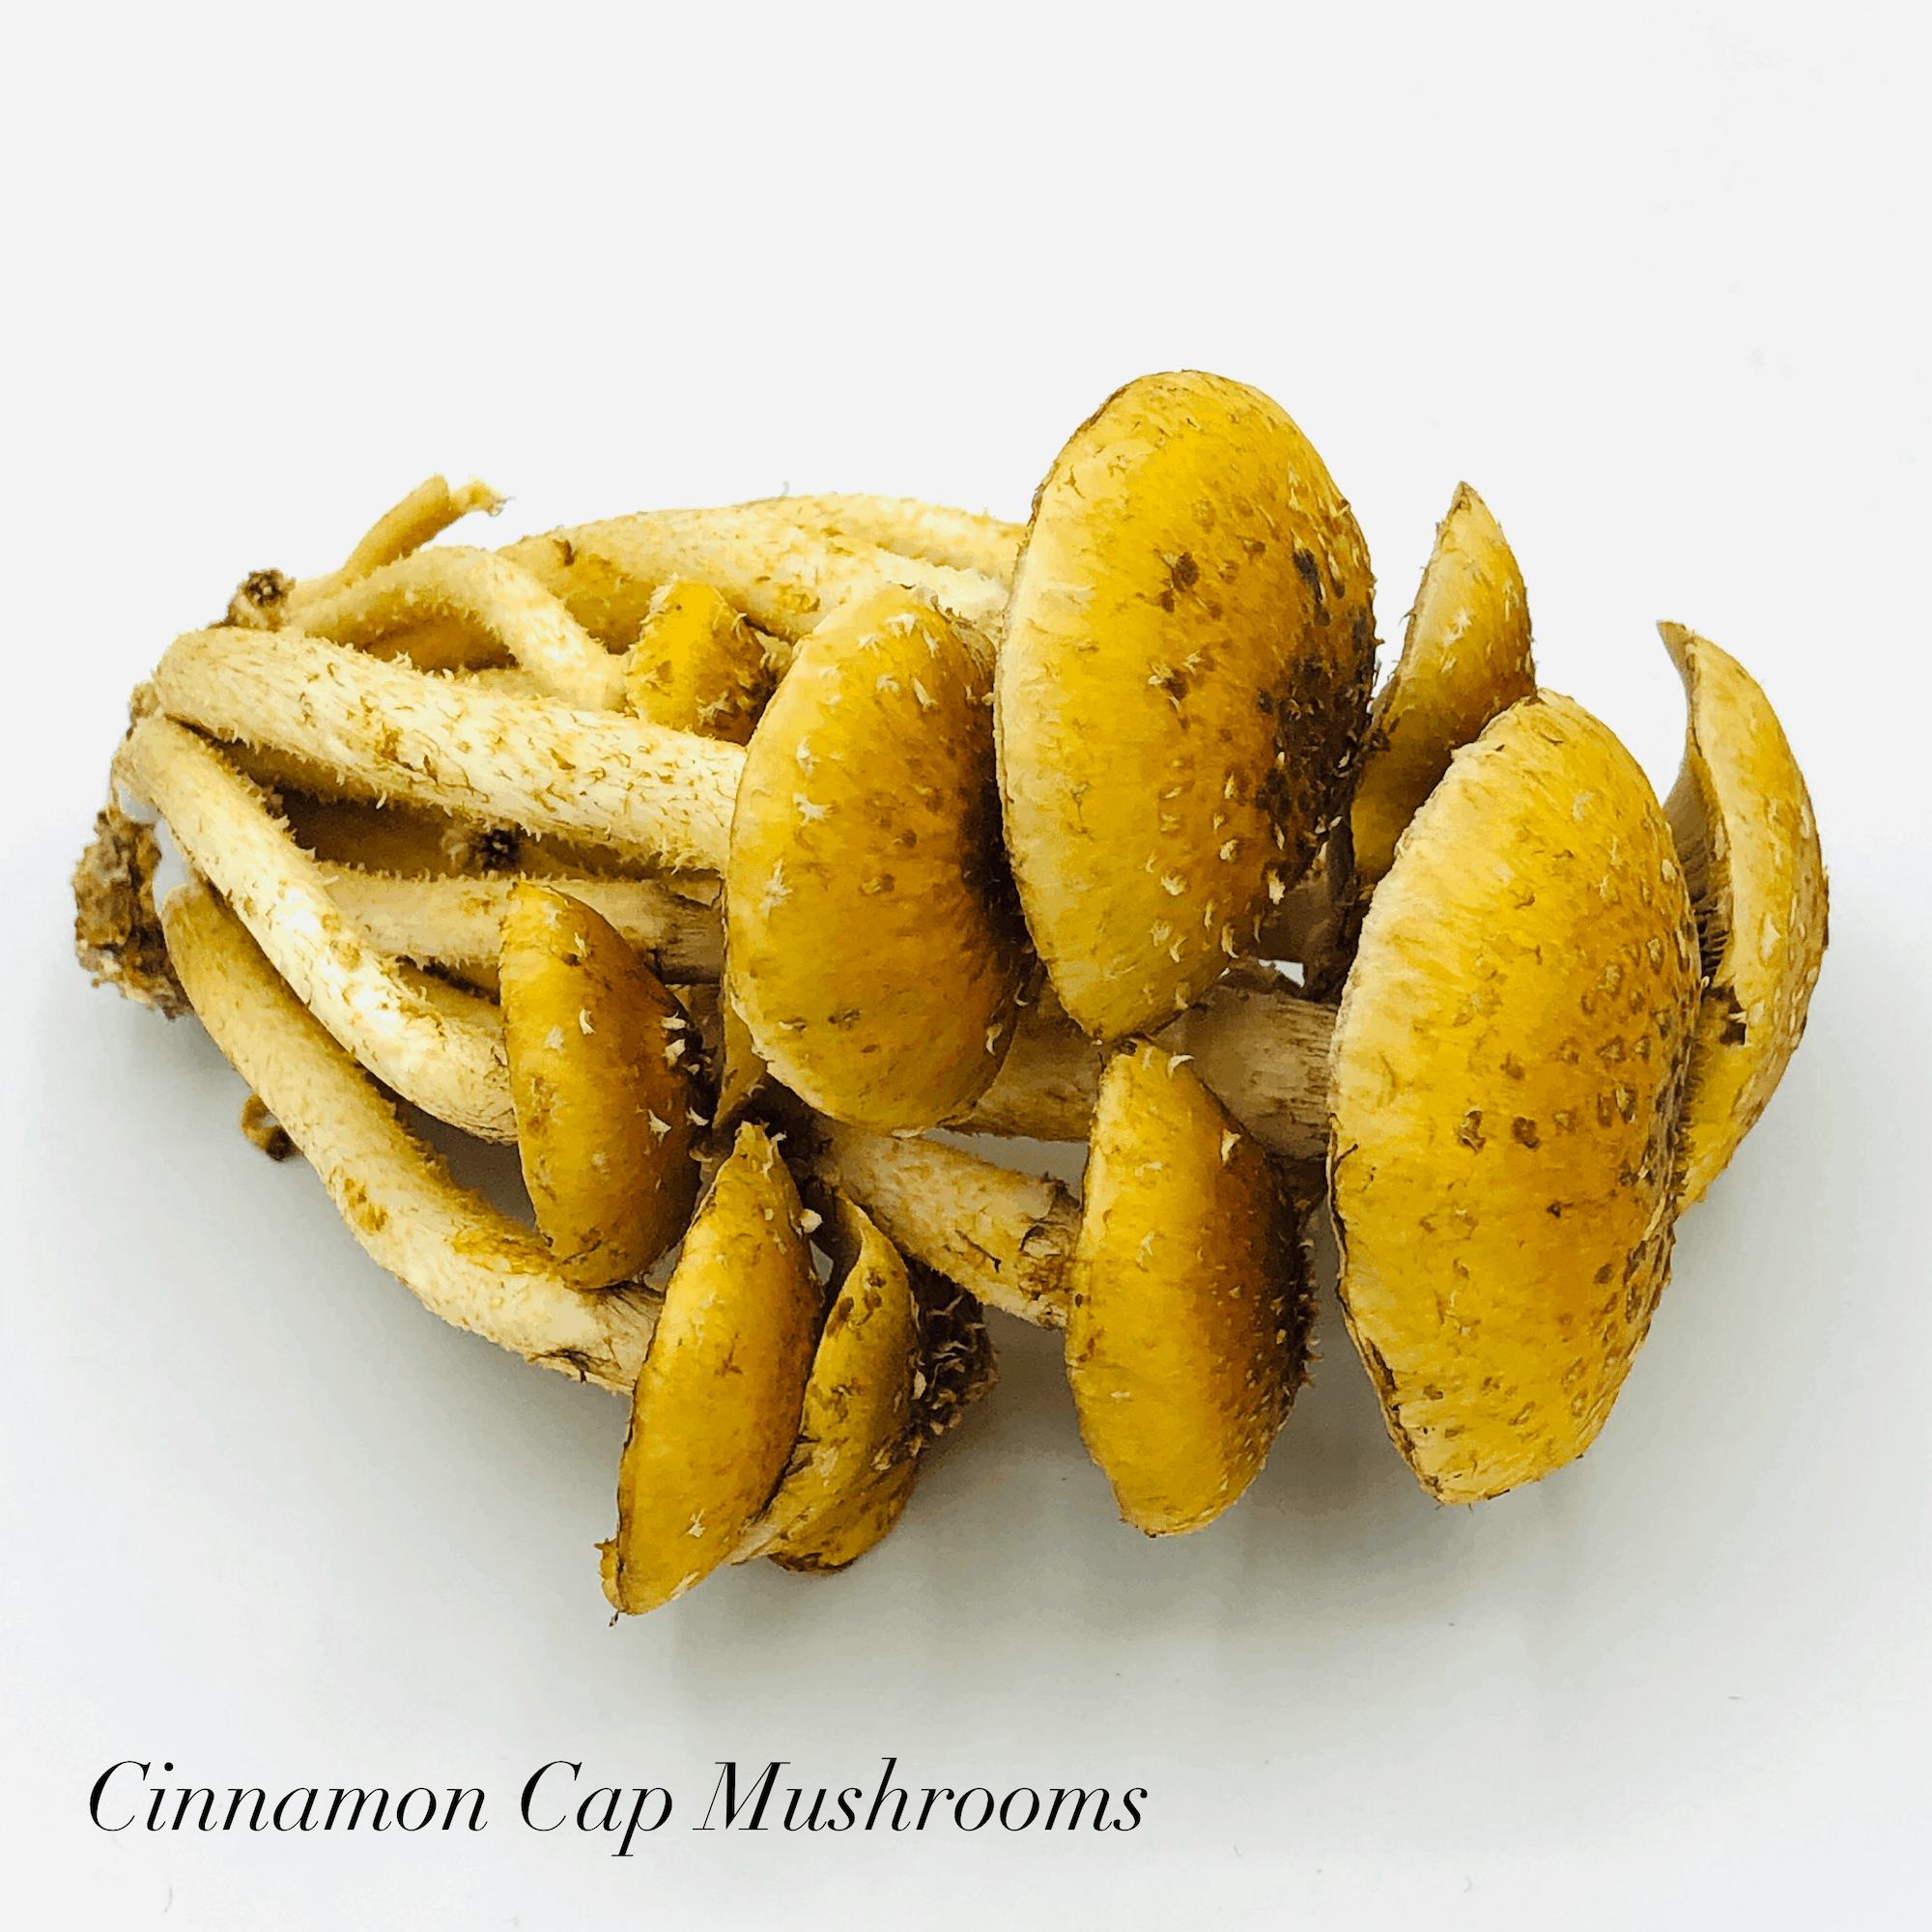 Cinnamon Cap Mushrooms